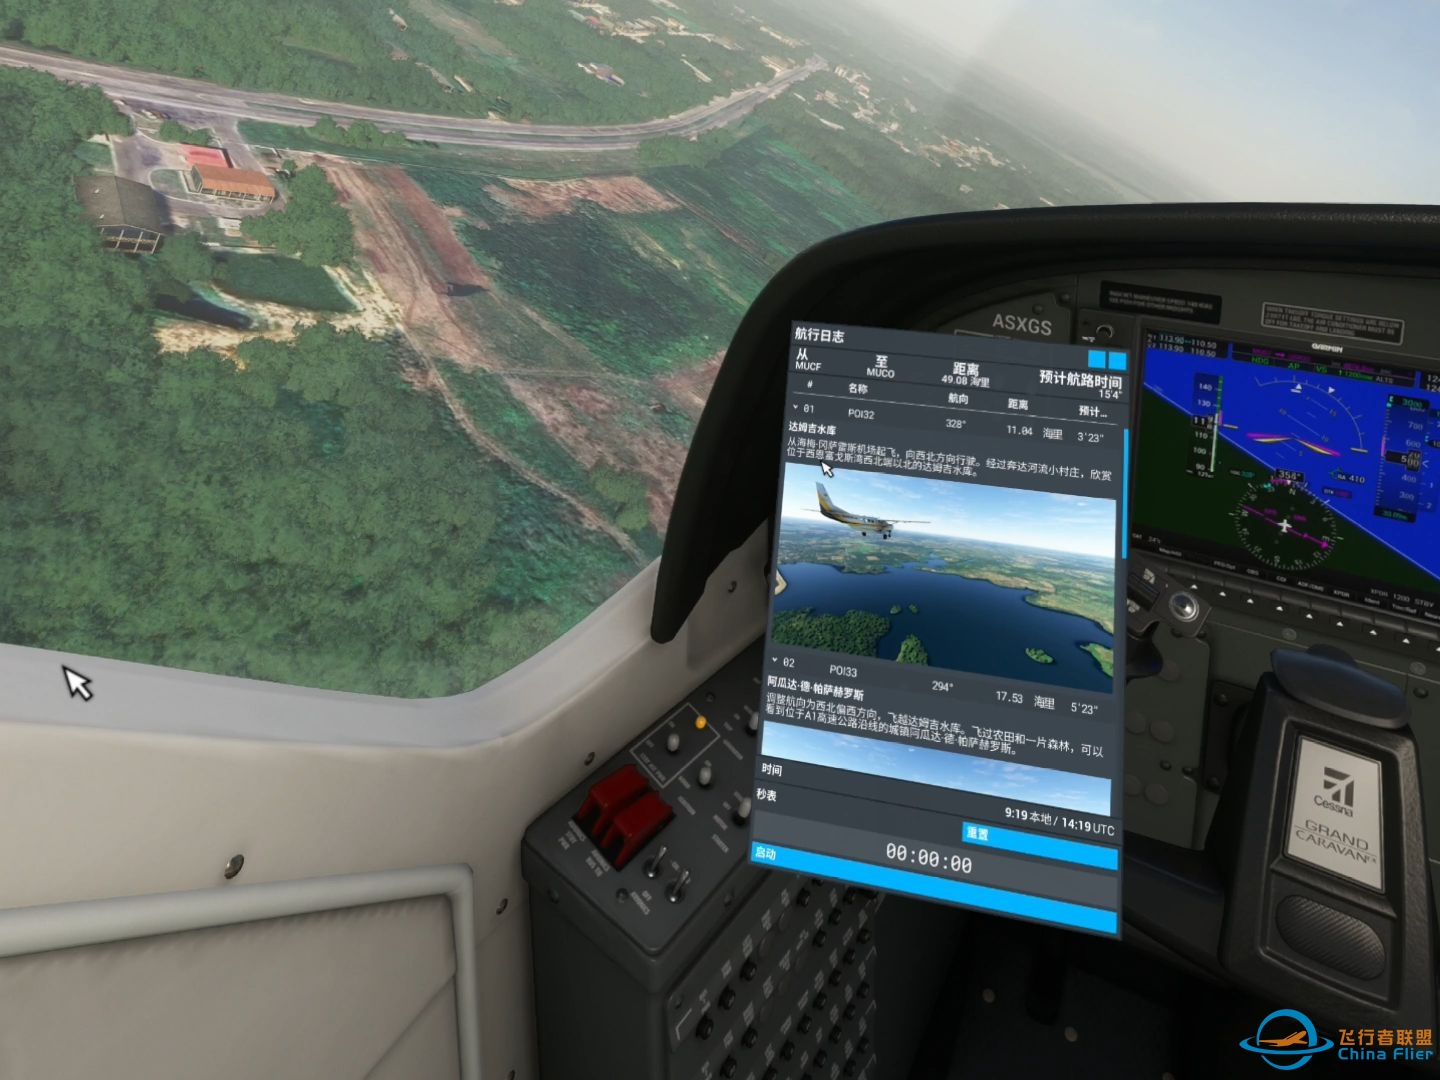 微软模拟飞行 584 VR 古巴圣地亚哥至哈瓦那 郊野之行-2872 